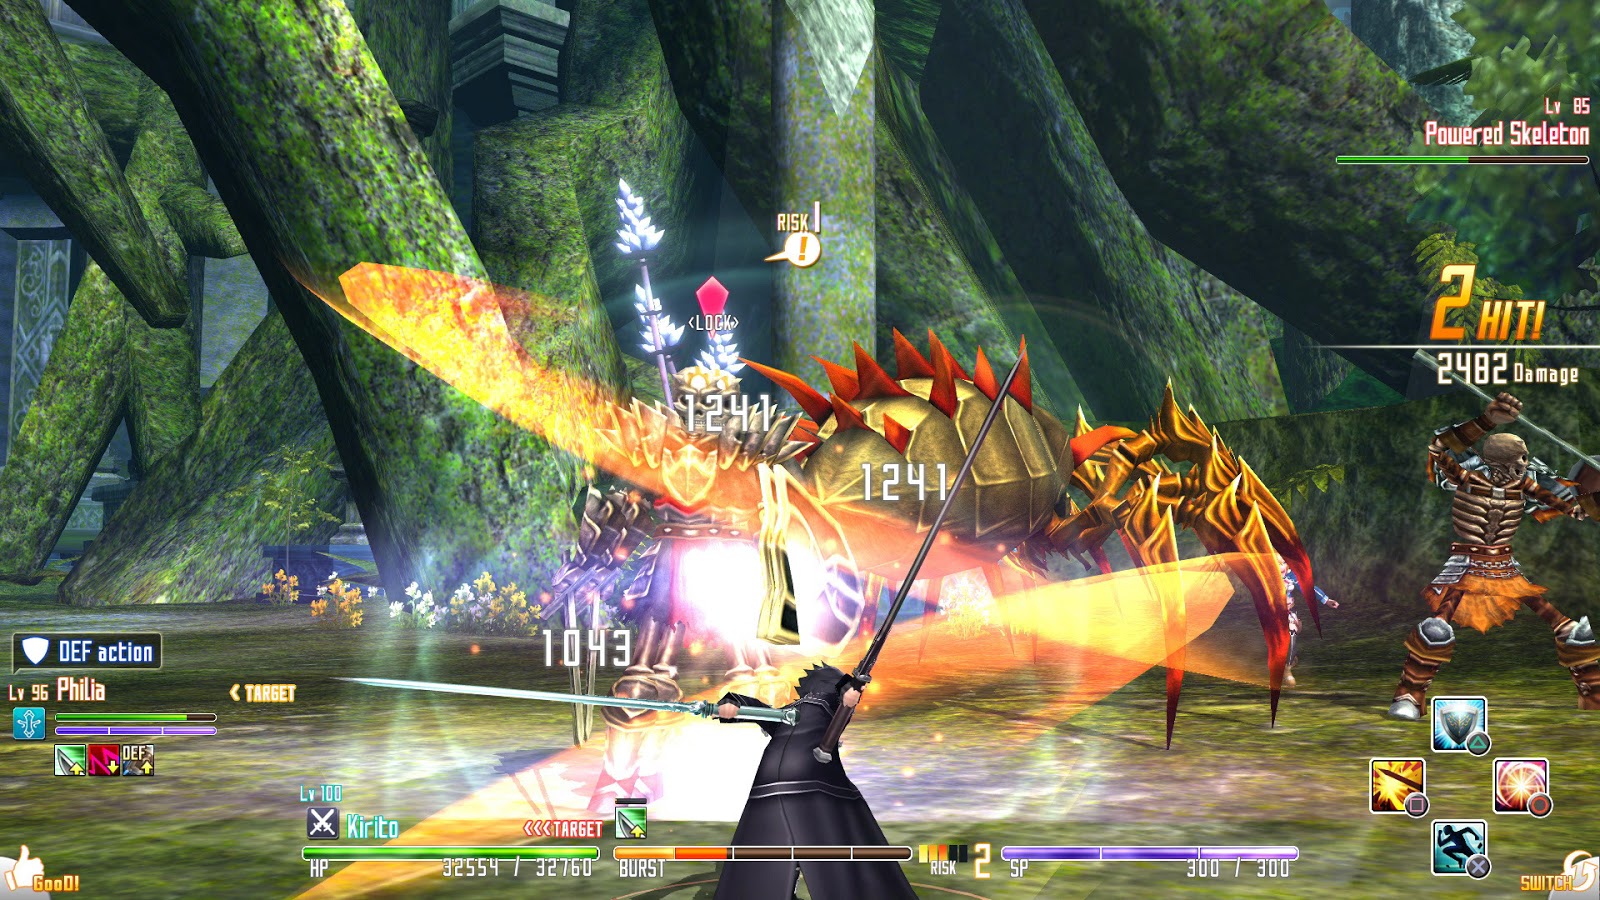 Sword Art Online Re: Hollow Fragment - E3 2015 Gameplay 